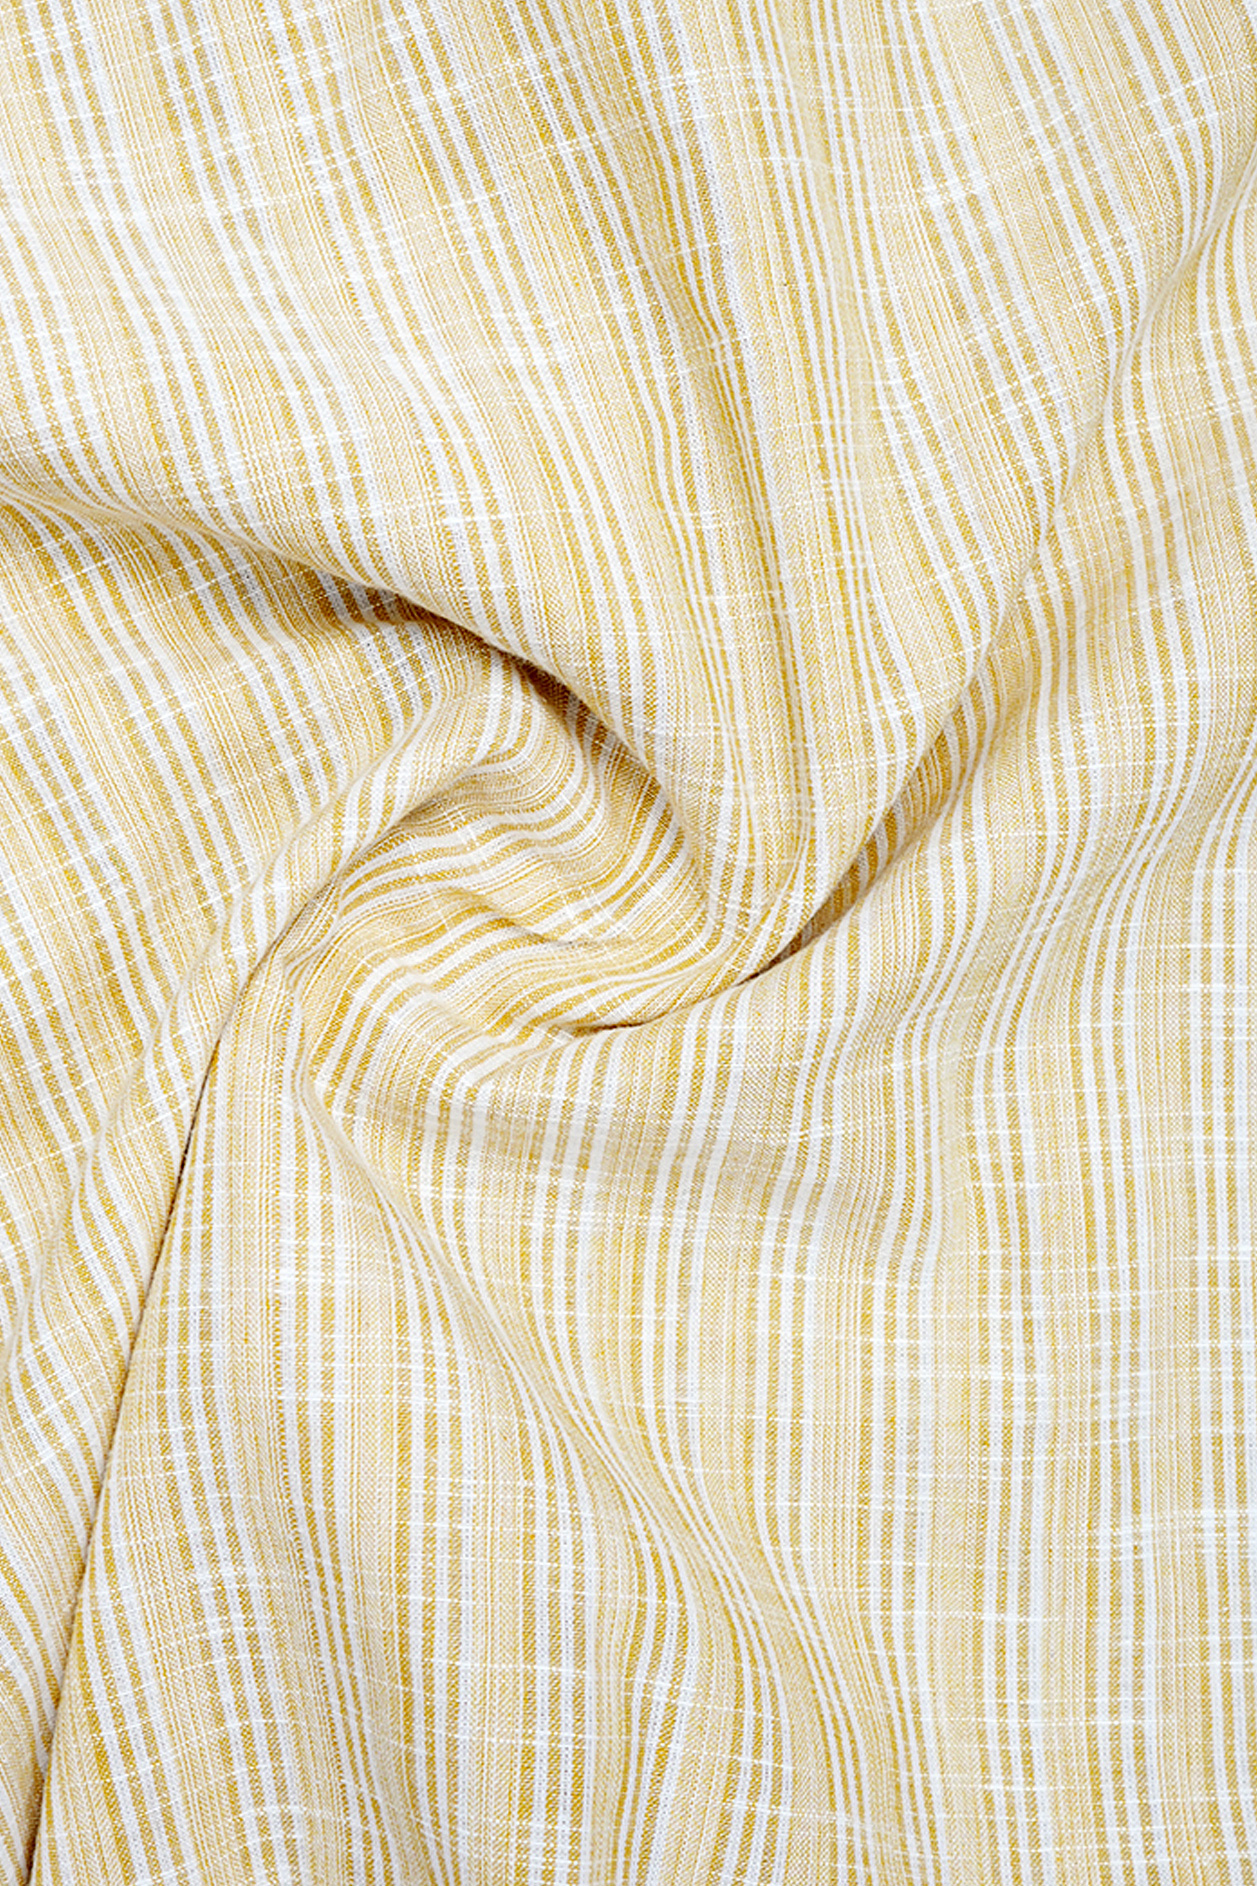 Regular Collar Stripes Design Light Yellow Linen Cotton Shirt